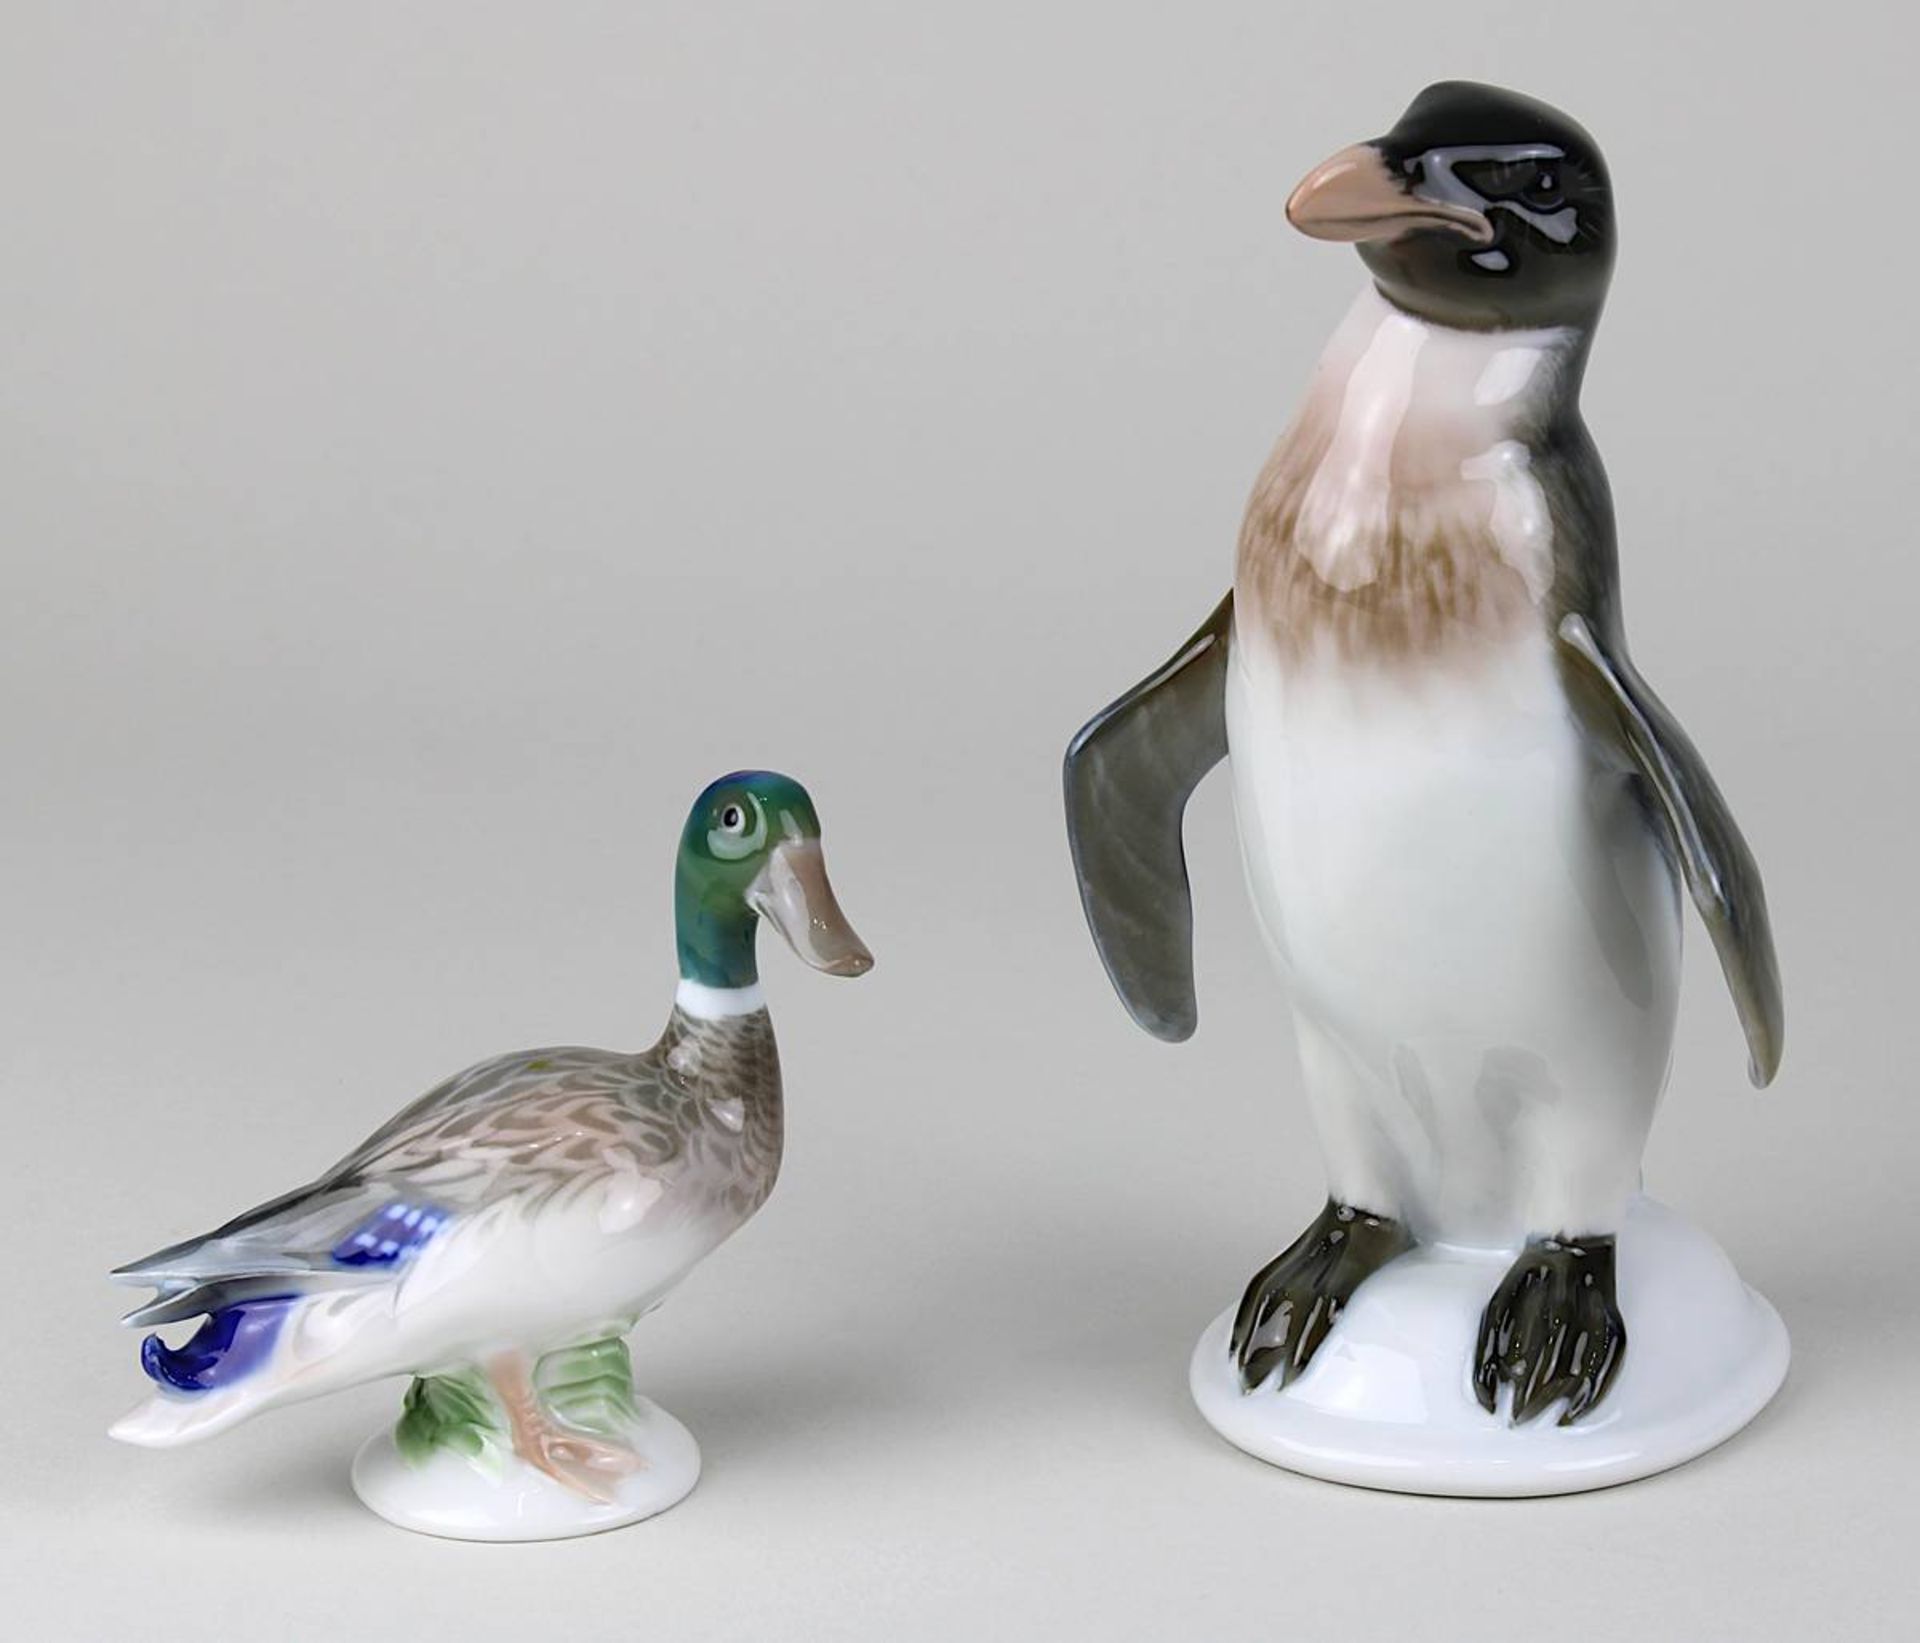 Rosenthal Enterich und Rosenthal Pinguin, beide Porzellan farbig unter Glasur bemalt: Pinguin